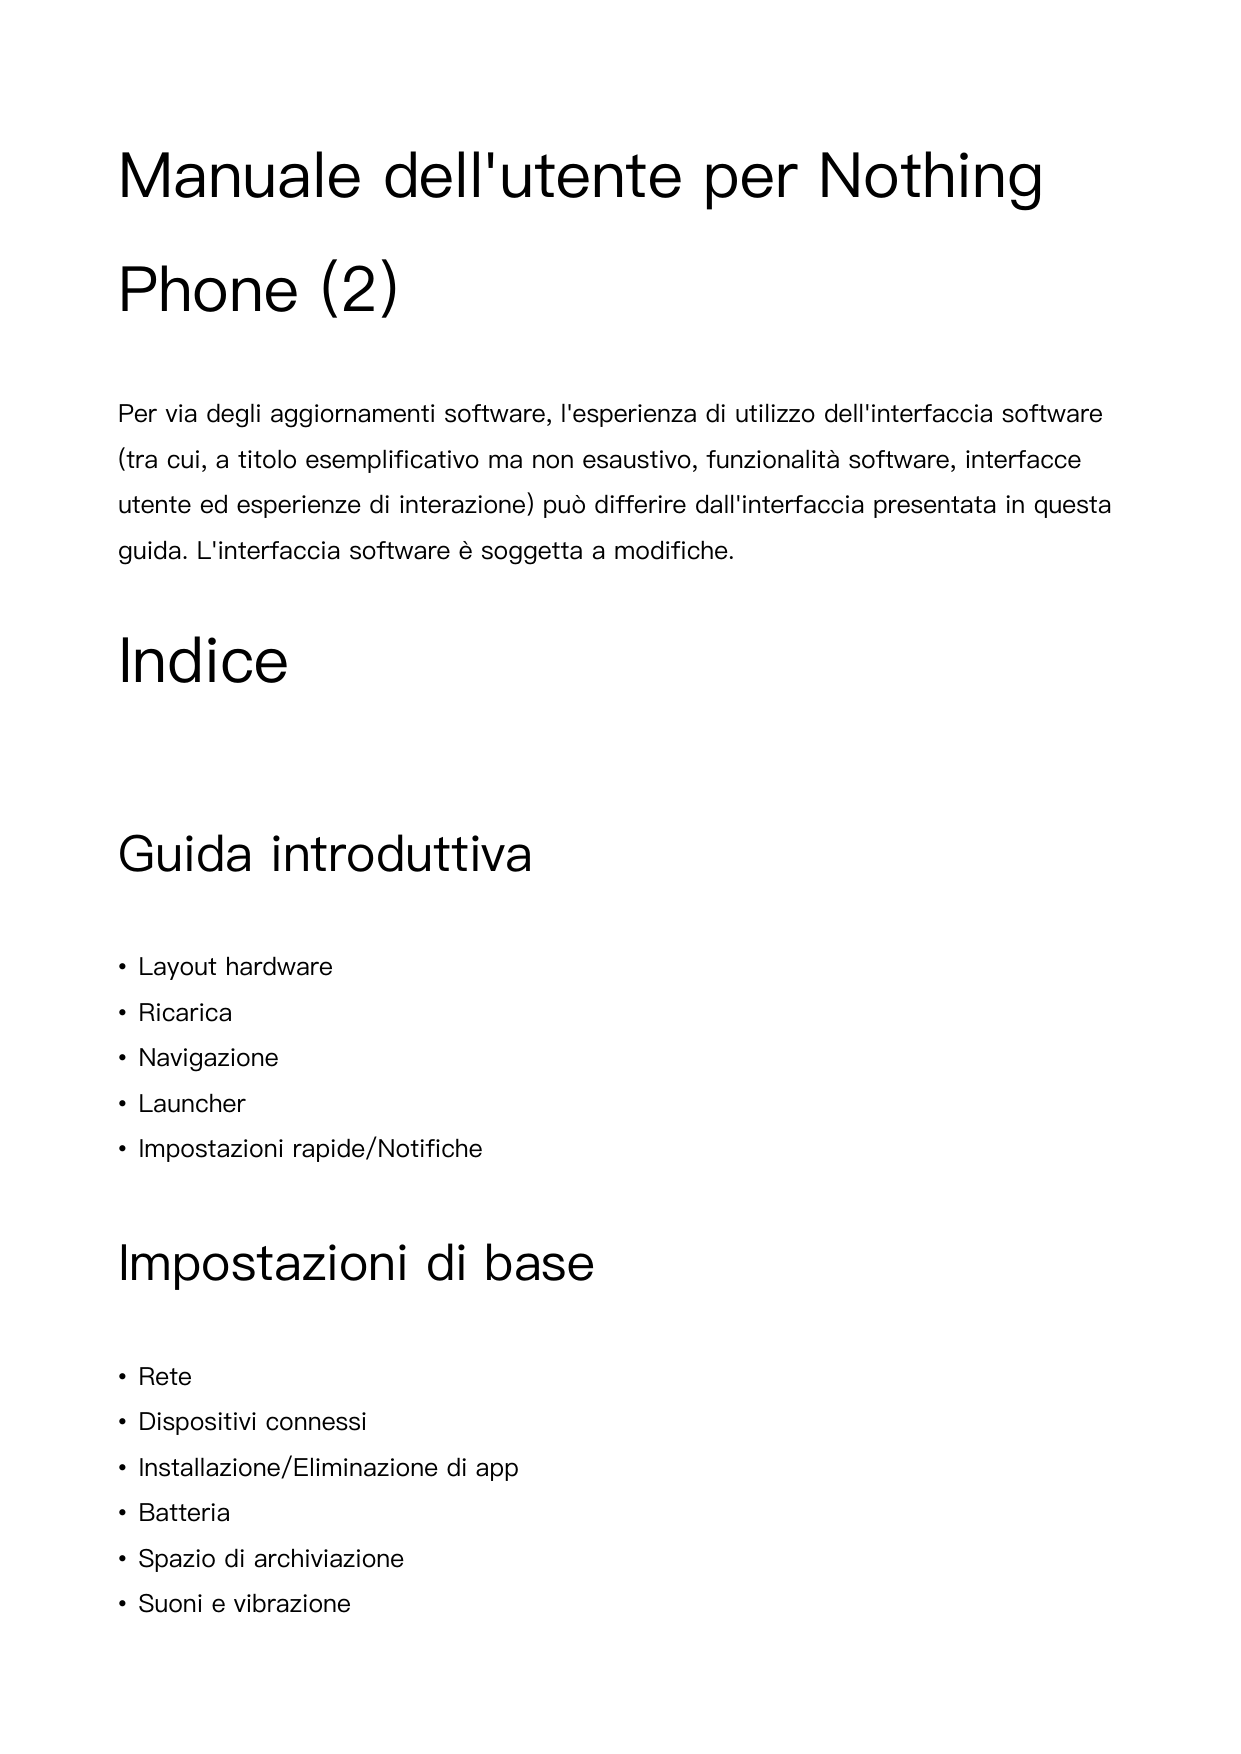 Manuale dell'utente per NothingPhone (2)Per via degli aggiornamenti software, l'esperienza di utilizzo dell'interfaccia software